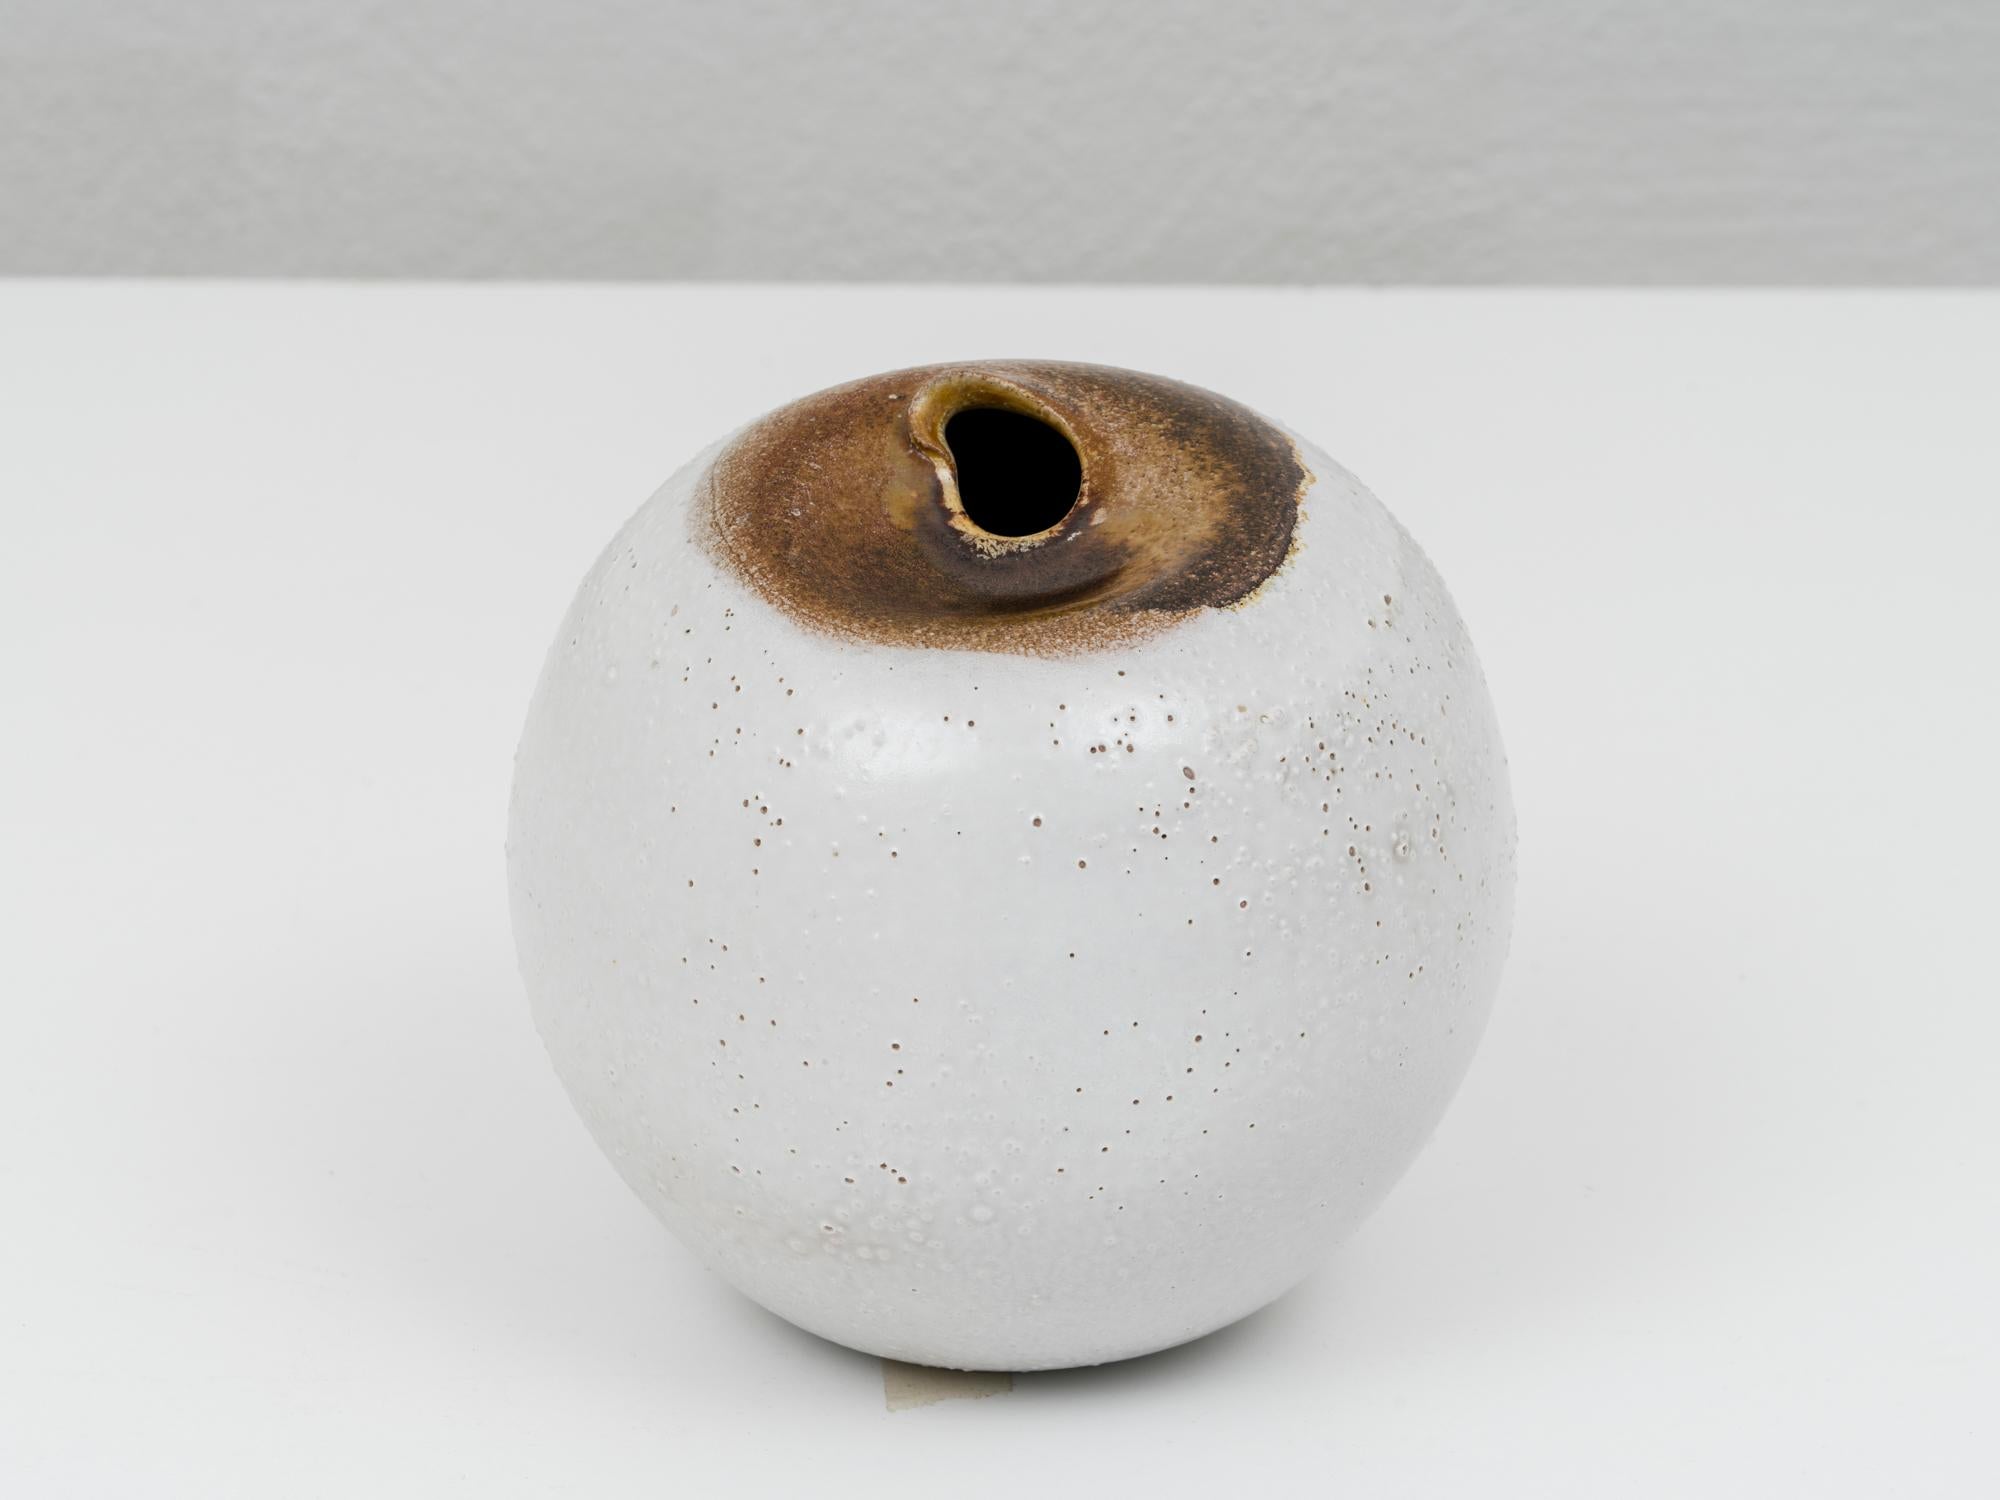 Vase postmoderne en céramique de Pino Castagna, dans les tons blanc et brun, avec une finition tactile et des bulles de cuisson créées à dessein. Cette pièce a été fabriquée dans le laboratoire de l'artiste à Costermano, près du lac de Garde, dans